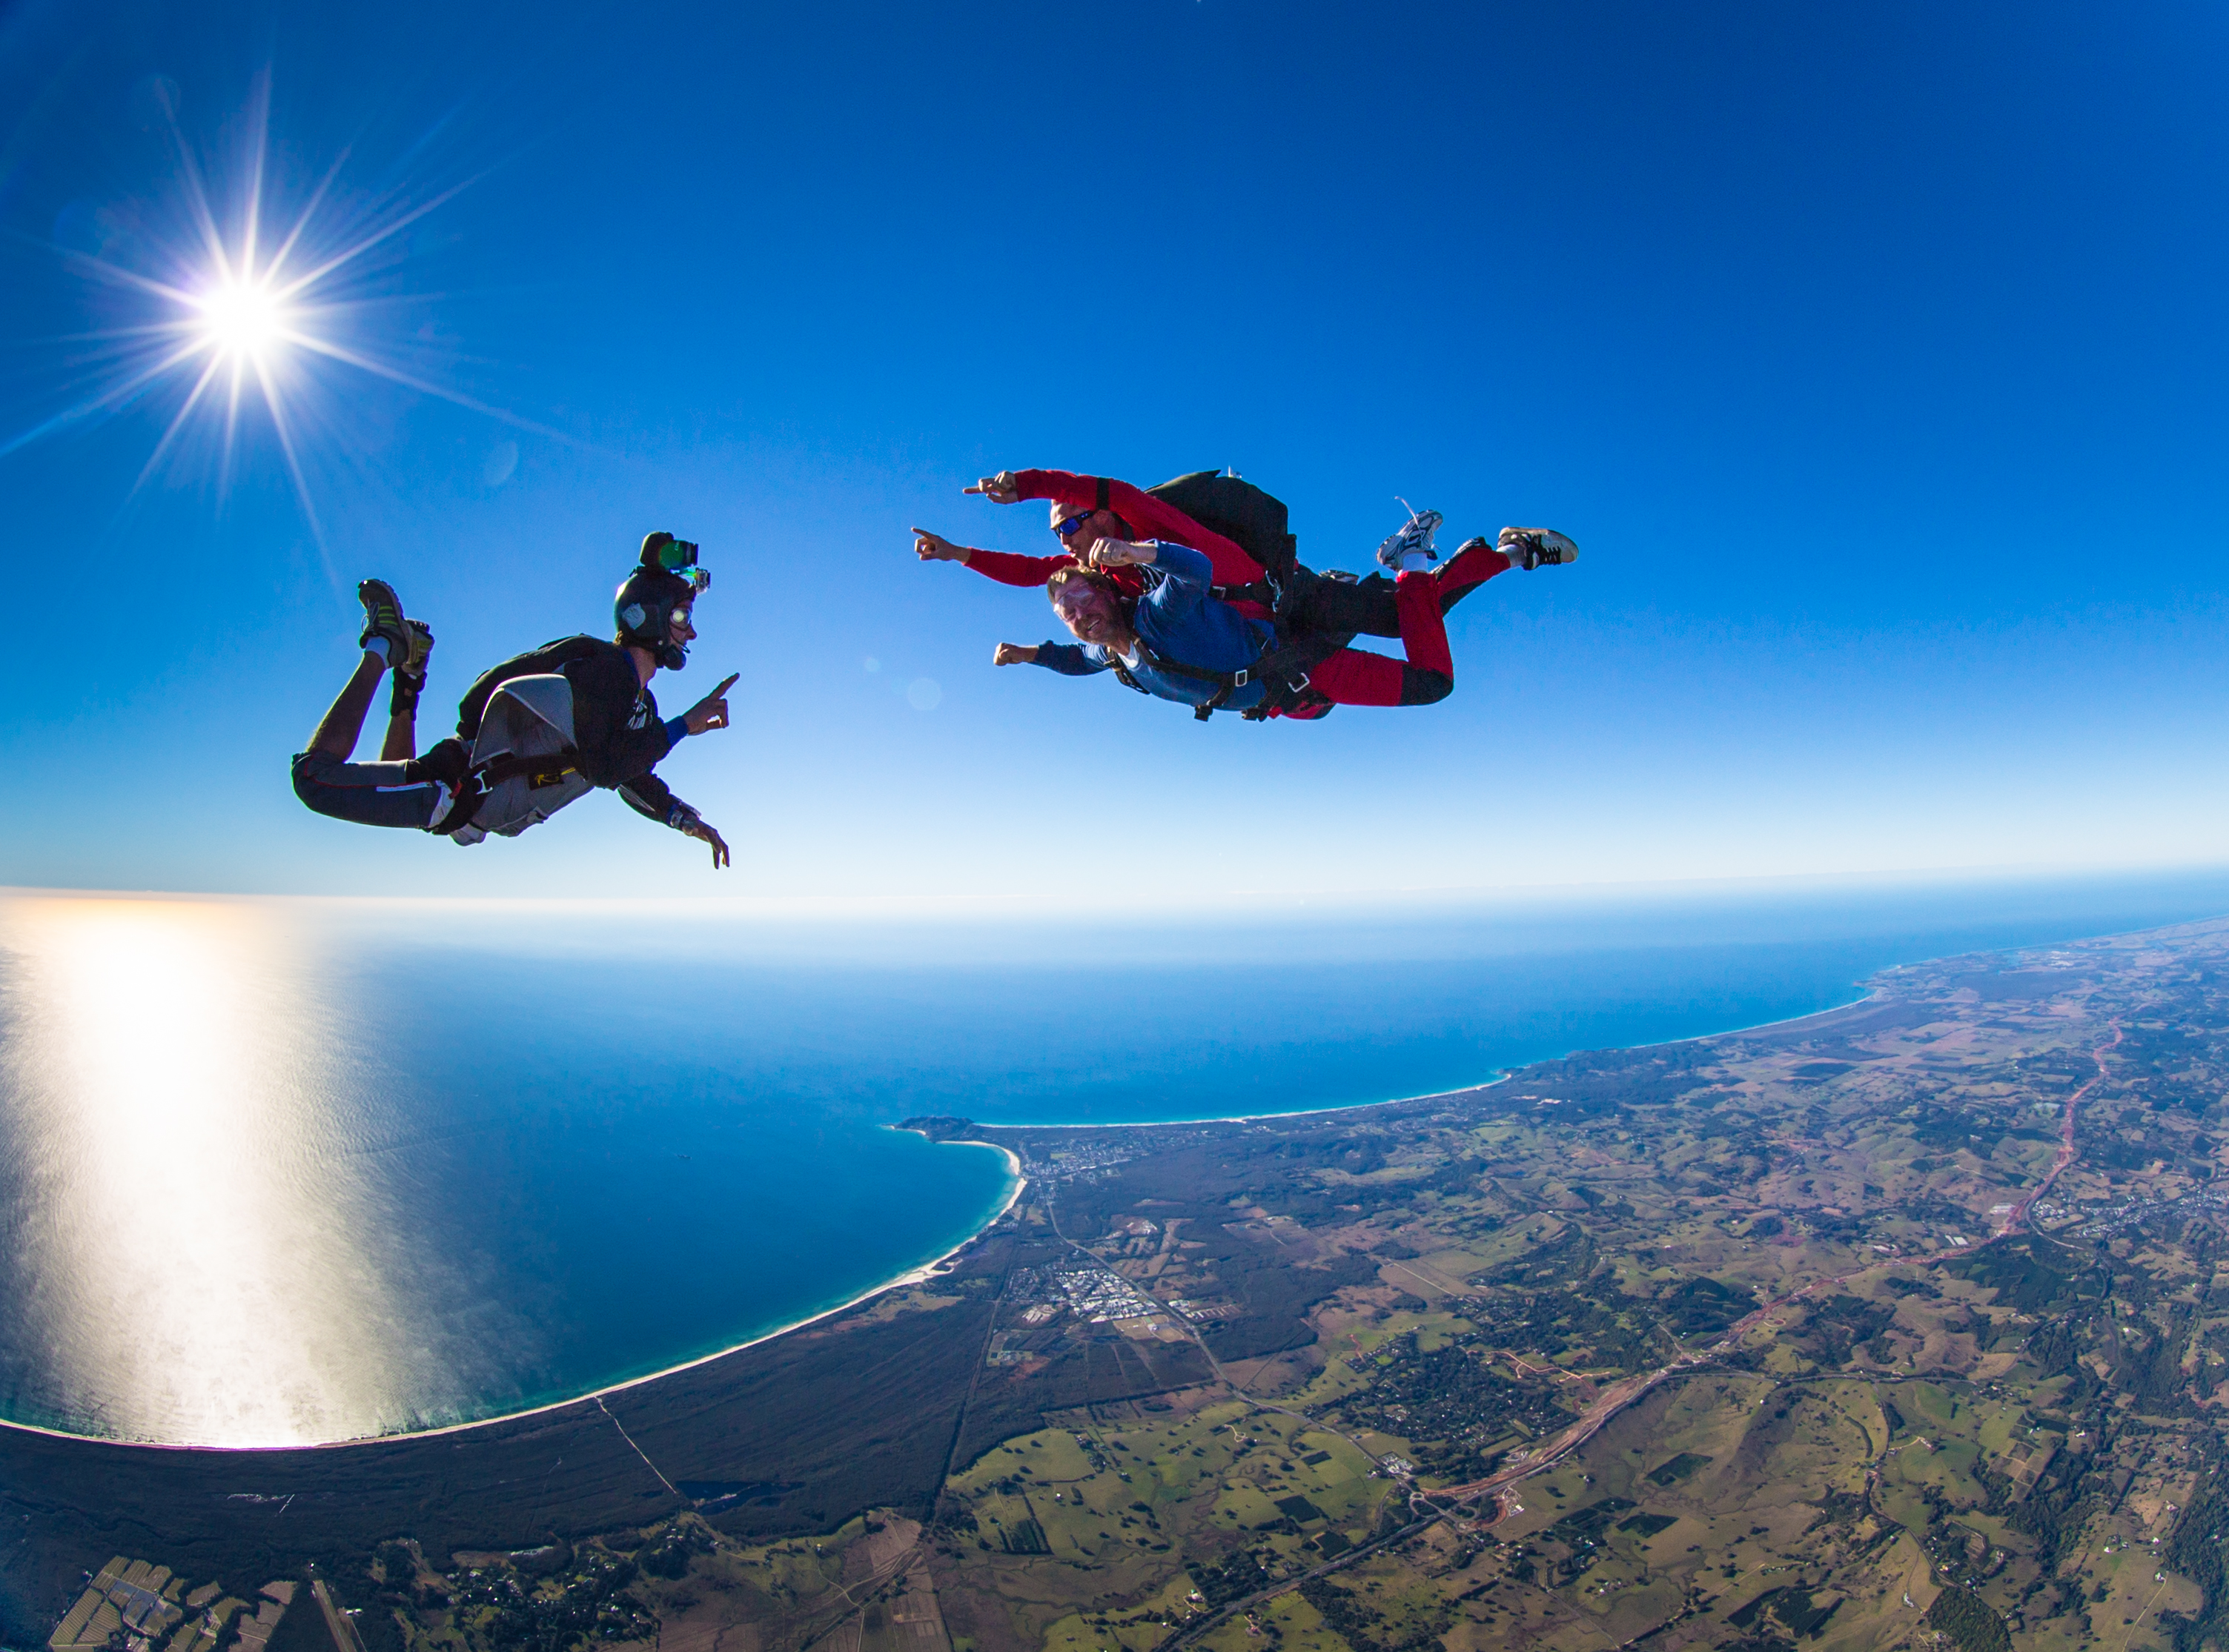 澳大利亚 凯恩斯 高空跳伞极限体验(专业教练放心安全+感受大堡礁的震撼+免费升级到15000英尺),马蜂窝自由行 - 马蜂窝自由行